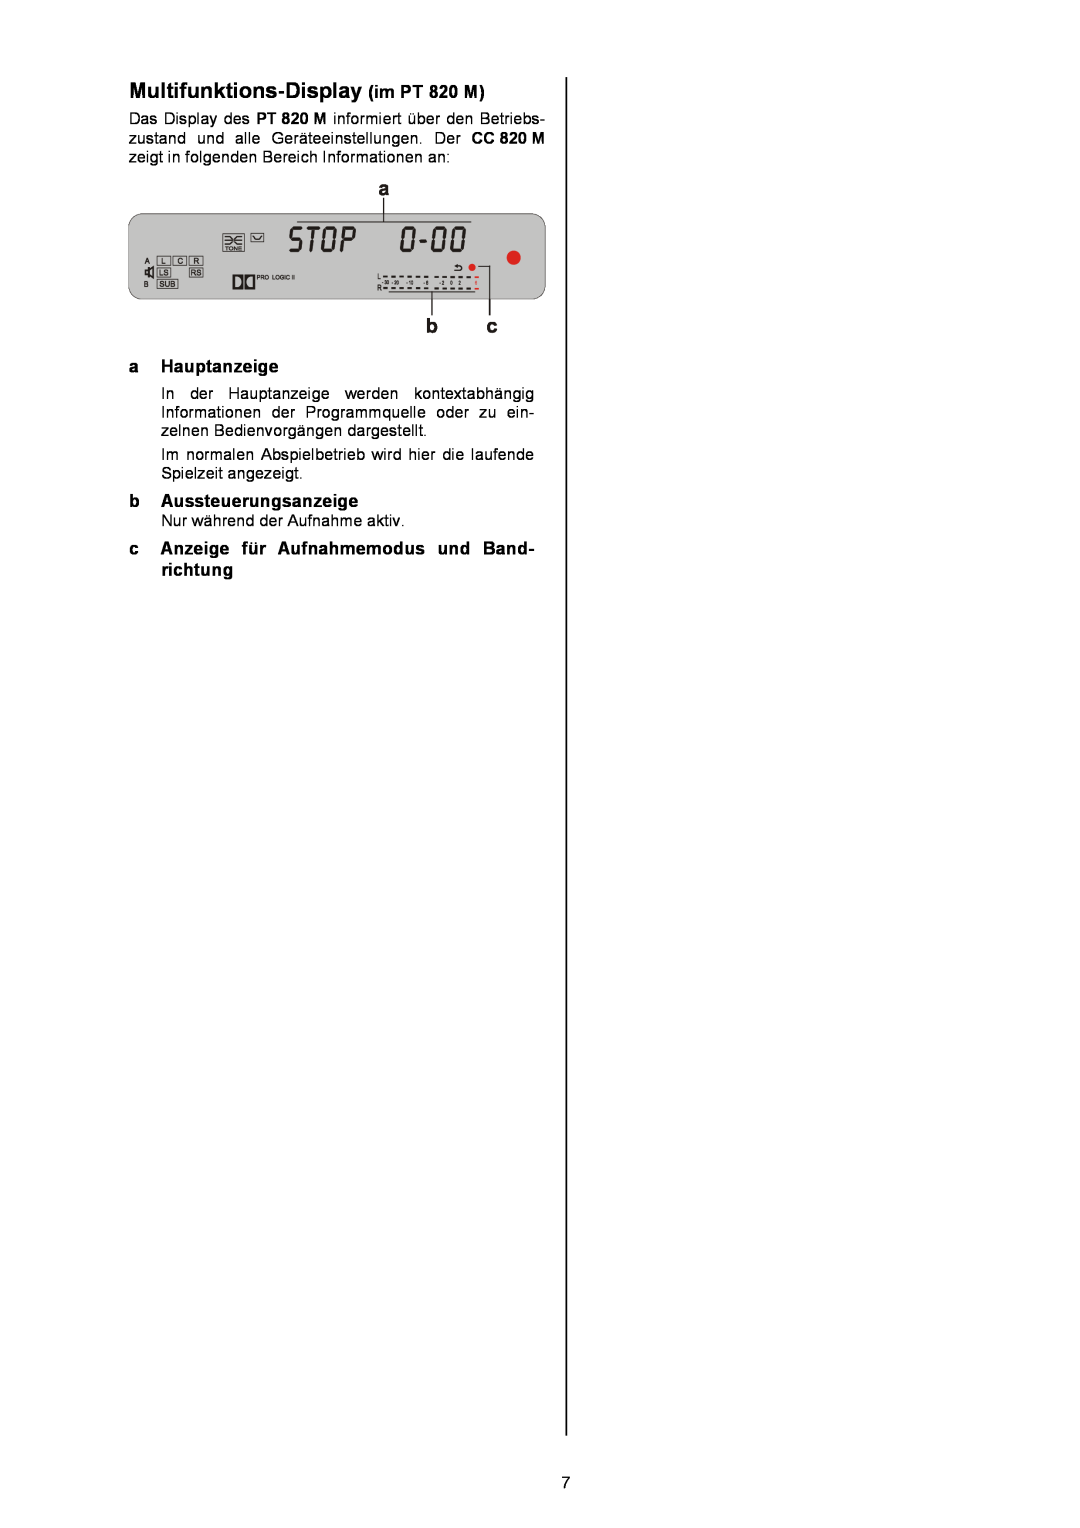 T+A Elektroakustik CC 820 M user manual Multifunktions-Display im PT 820 M, aHauptanzeige, bAussteuerungsanzeige 